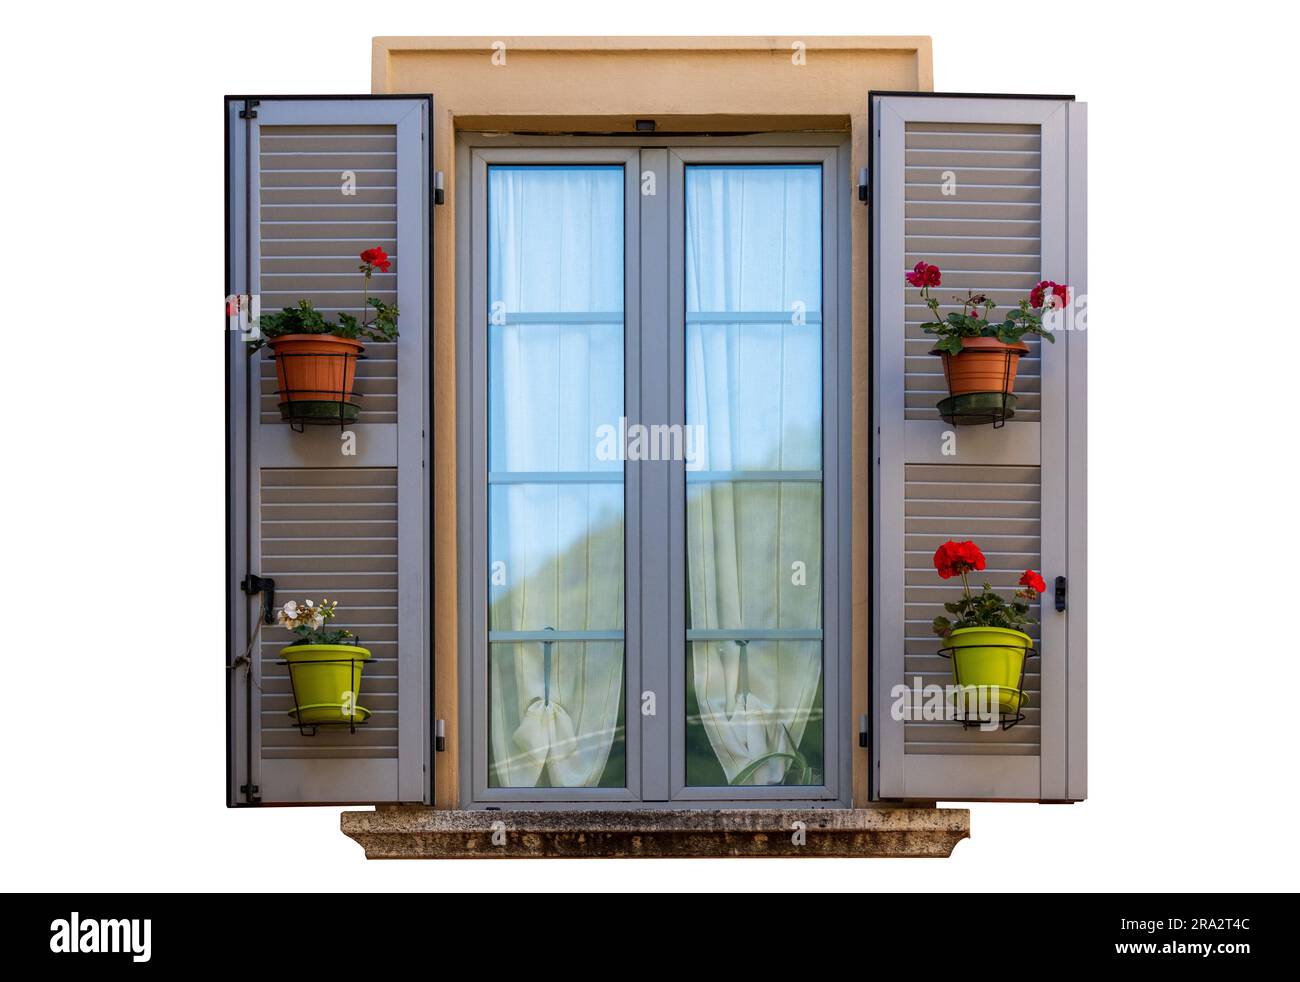 Traditionelle Fenster mit grauen Fensterläden, Blumentopf, europa, isoliert, weißer Hintergrund Stockfoto